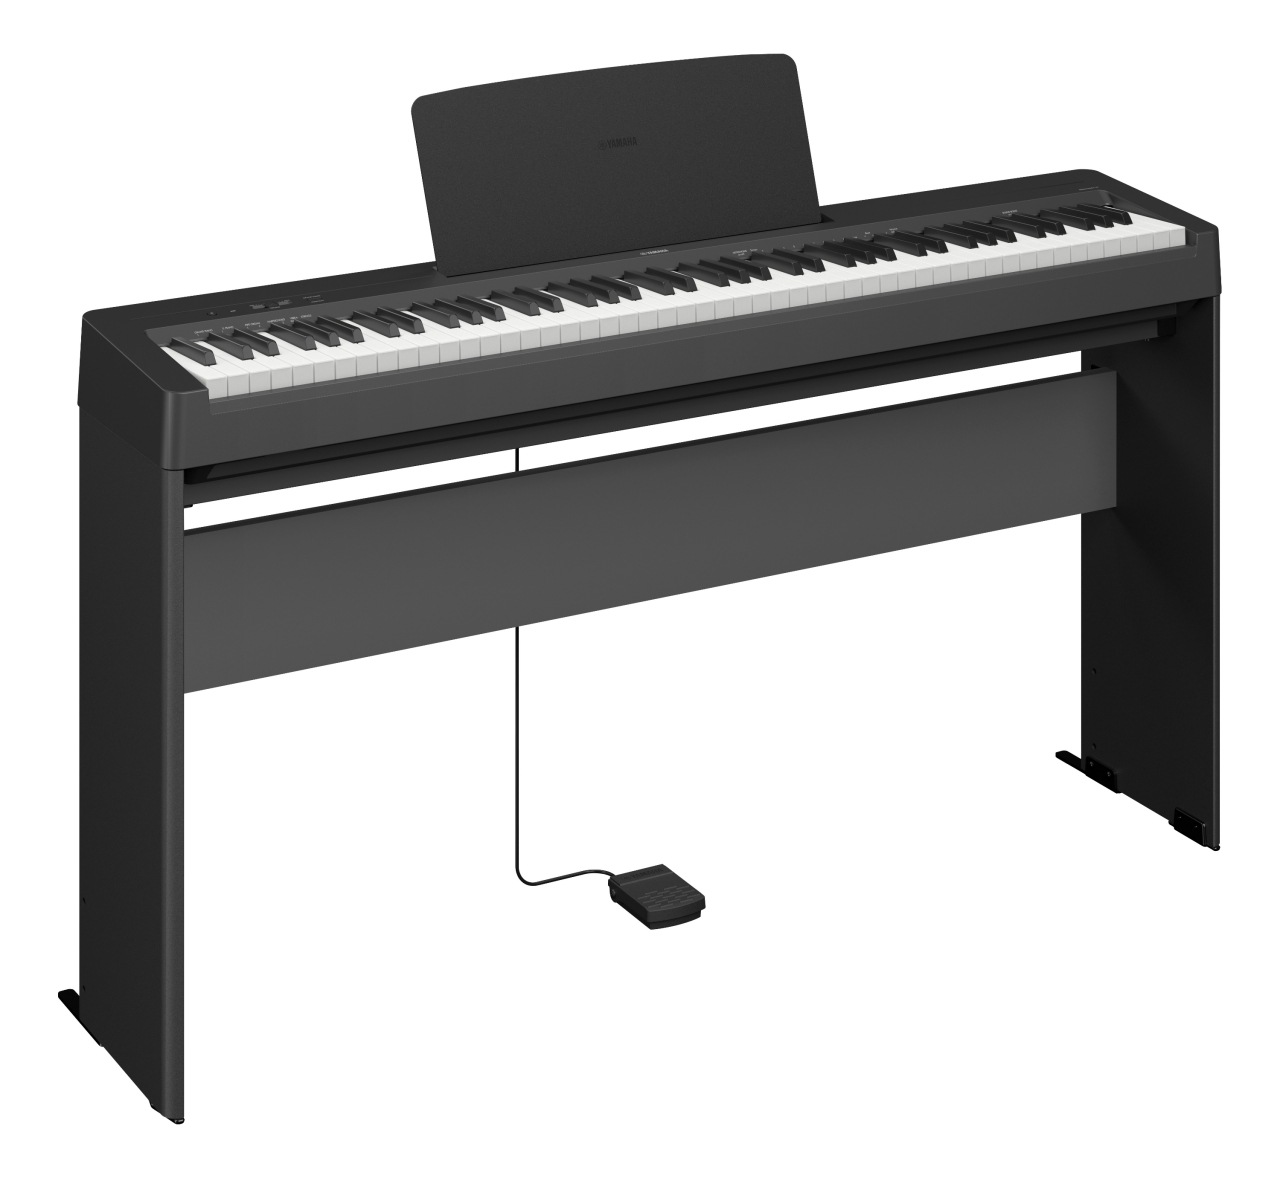 Đàn Piano điện tử YAMAHA P-143 kèm chân và pedal - Thiết kế nhỏ gọn, phù hợp cho người mới tập chơi, sản phẩm chính hãng